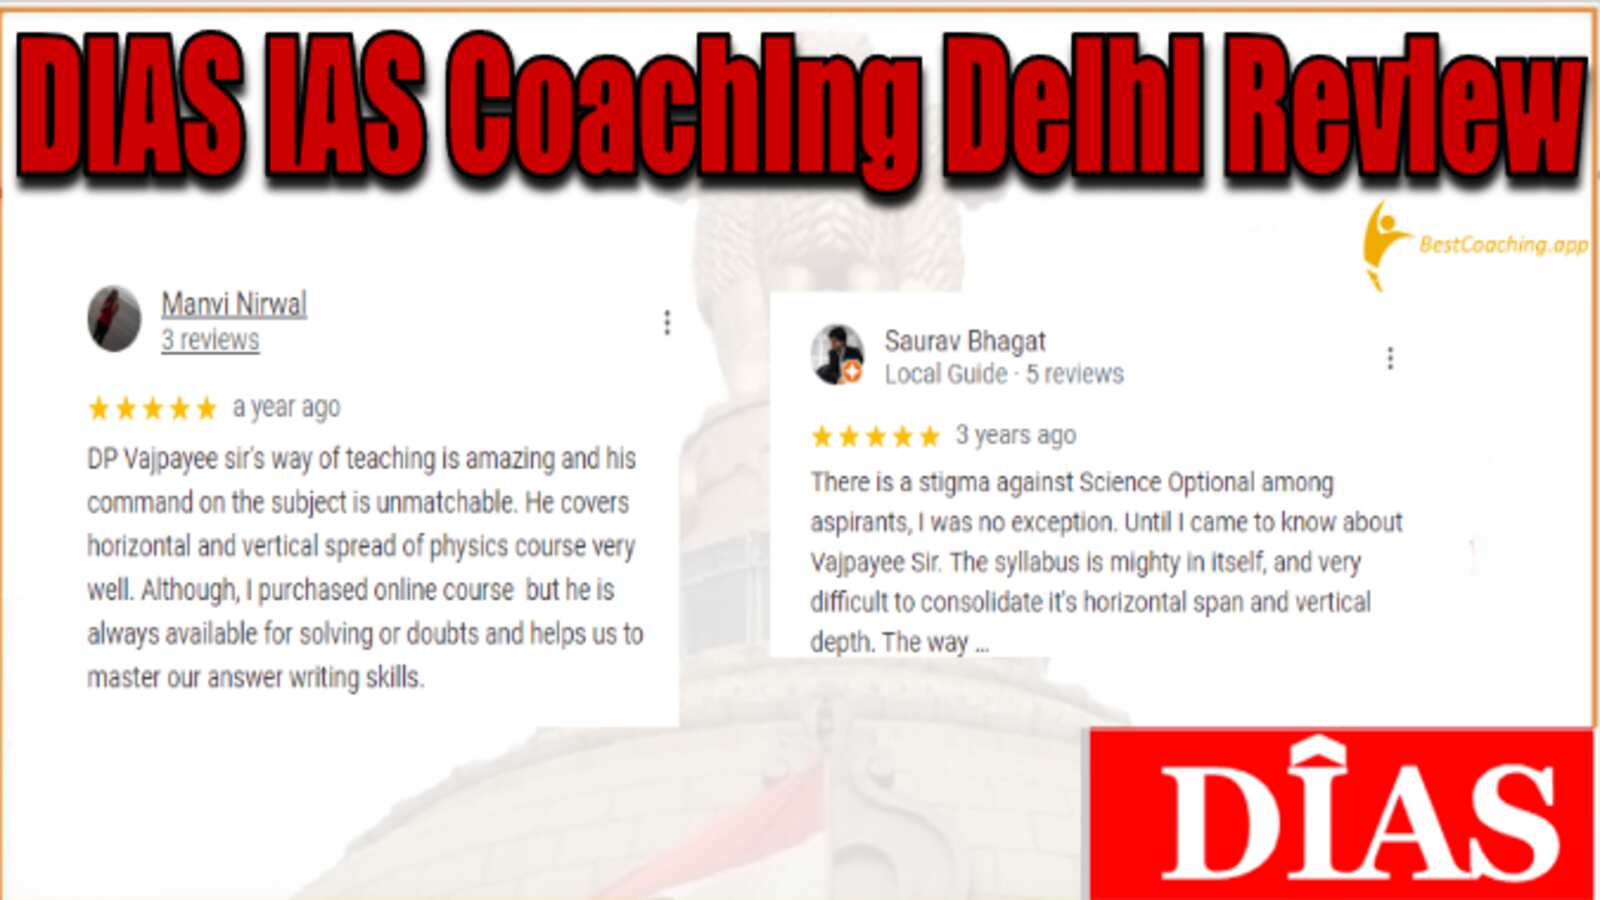 DIAS IAS Coaching Delhi Review